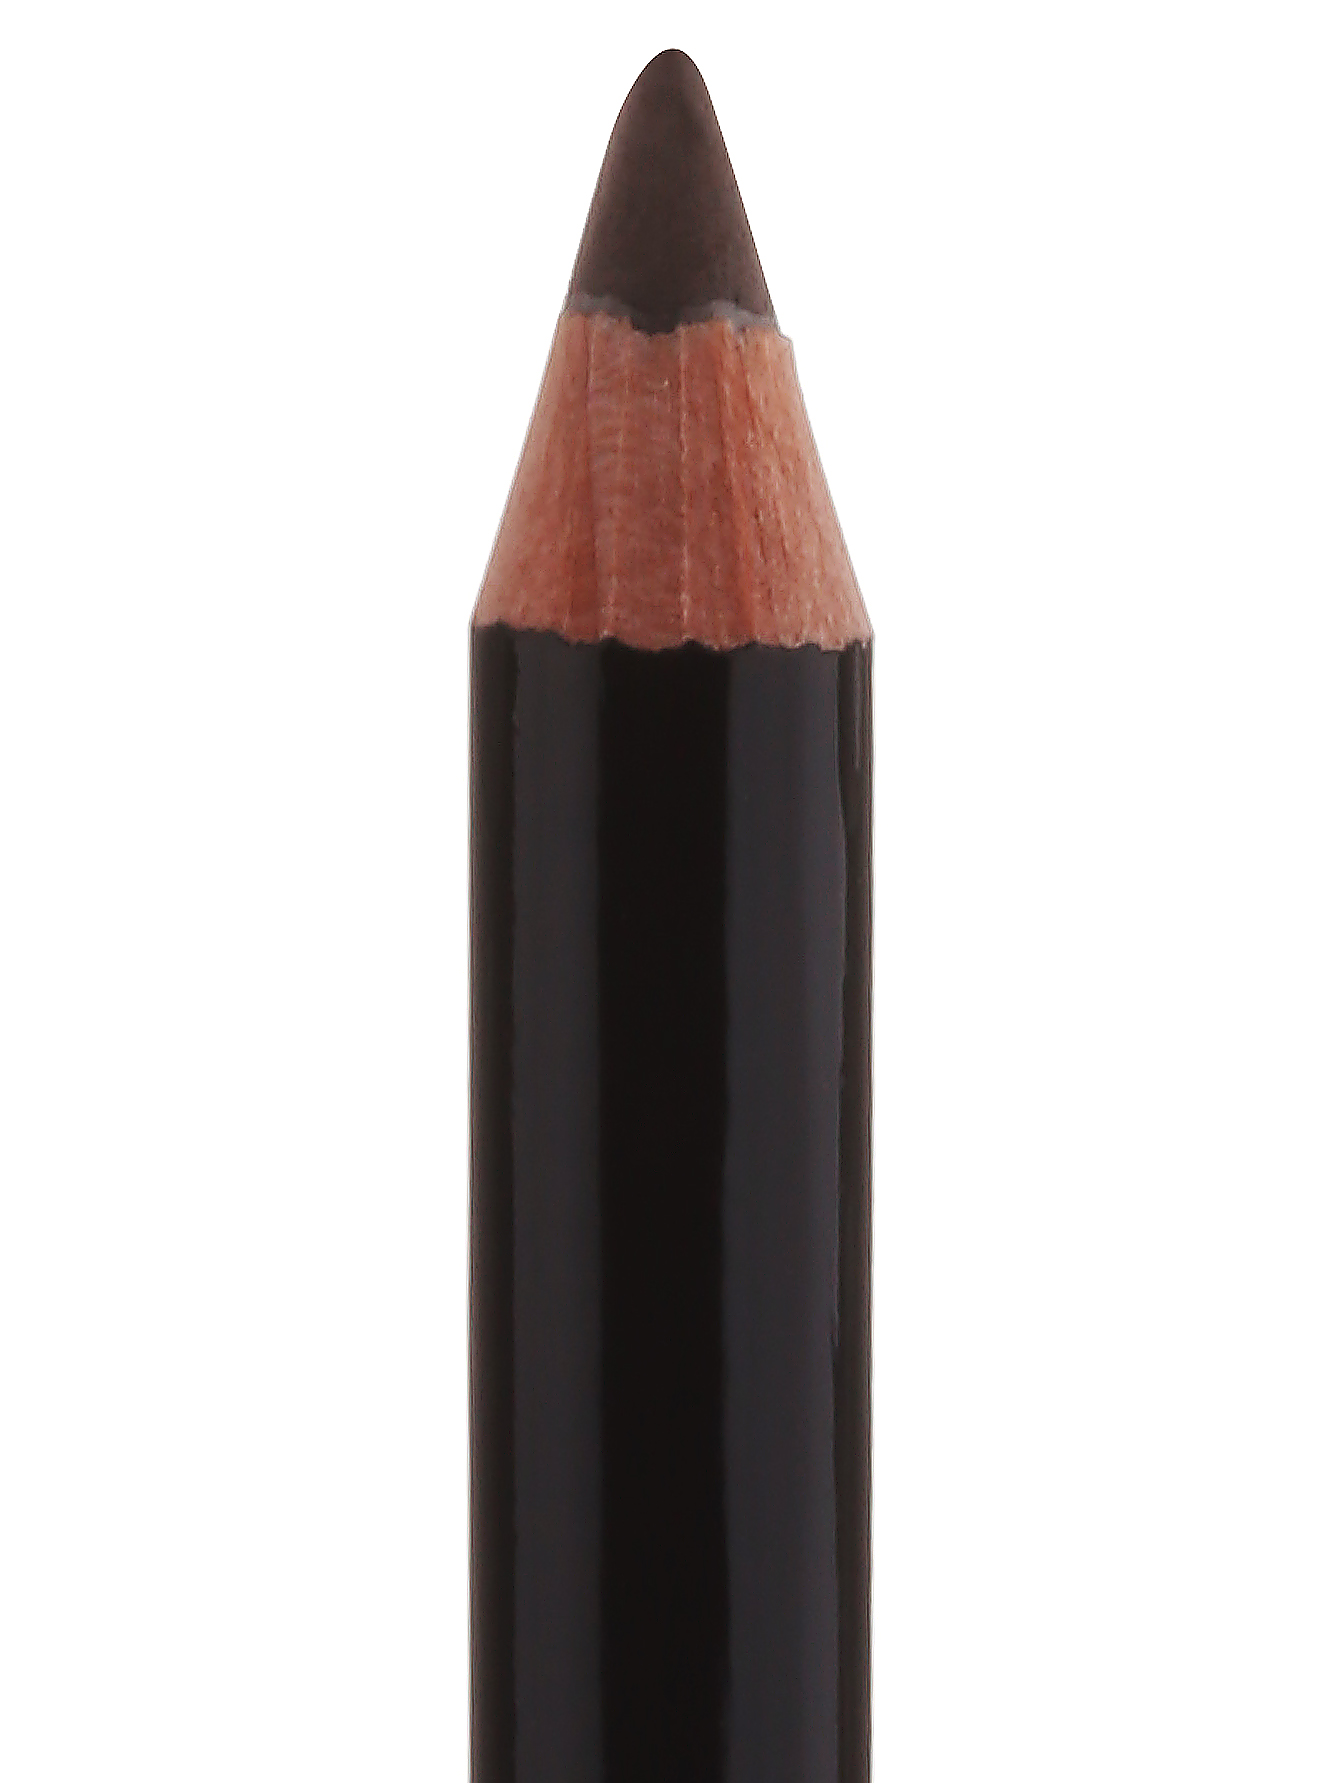  Карандаш для бровей - Brunette, Brow Pencil - Общий вид